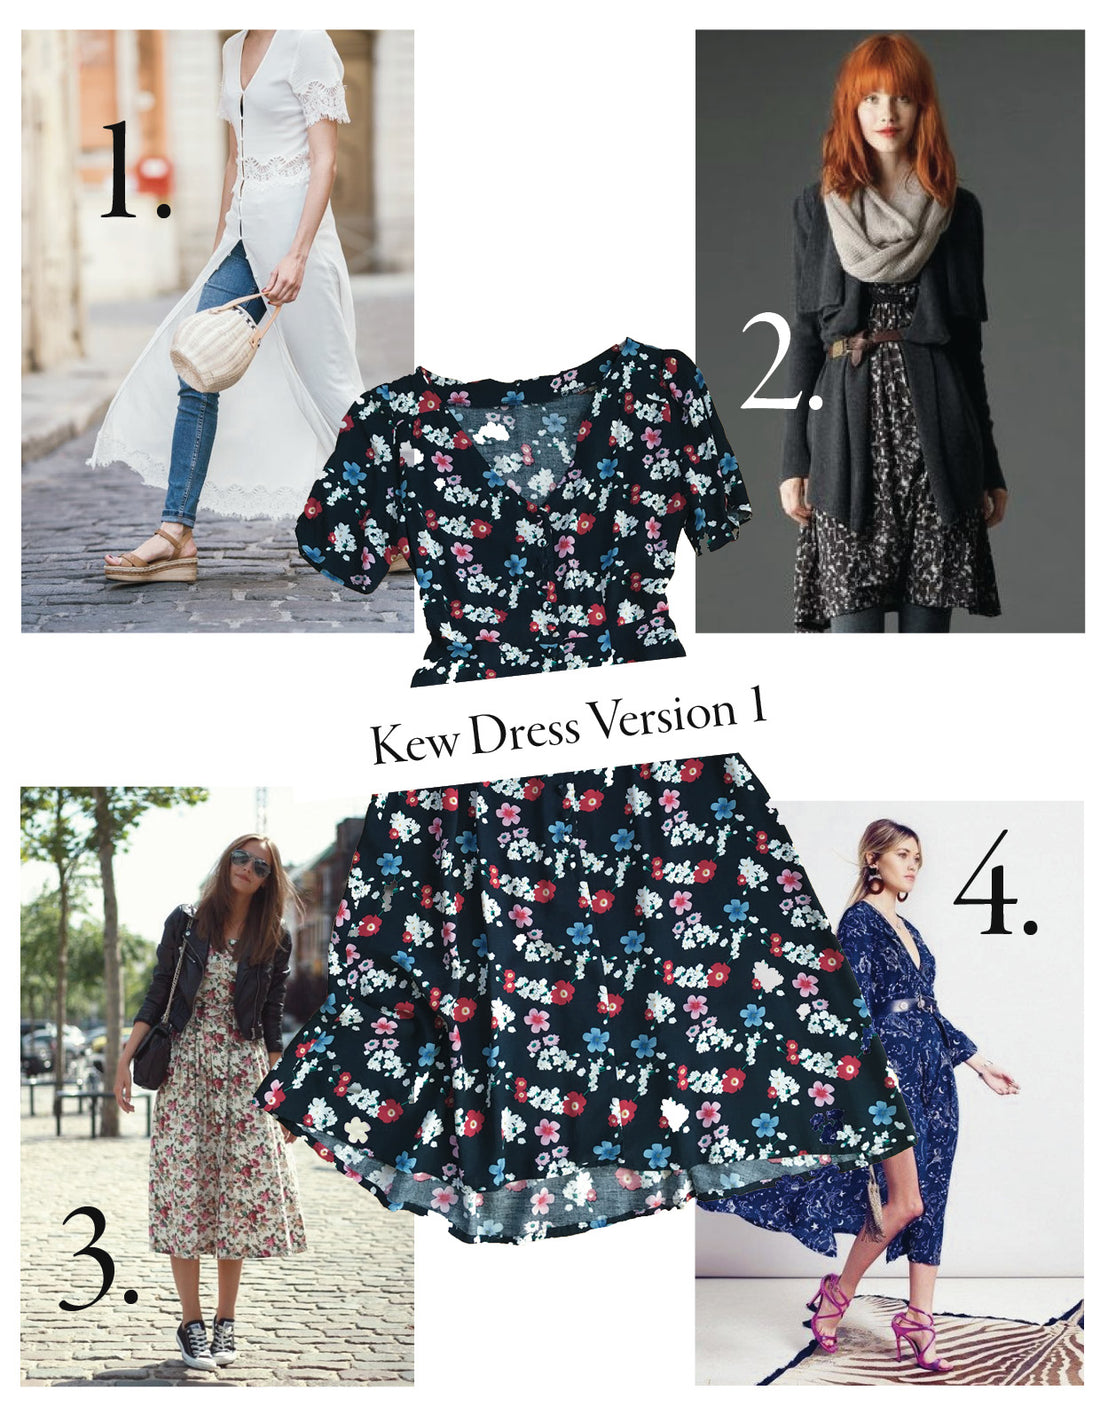 Kew Dress: Styled Four Ways